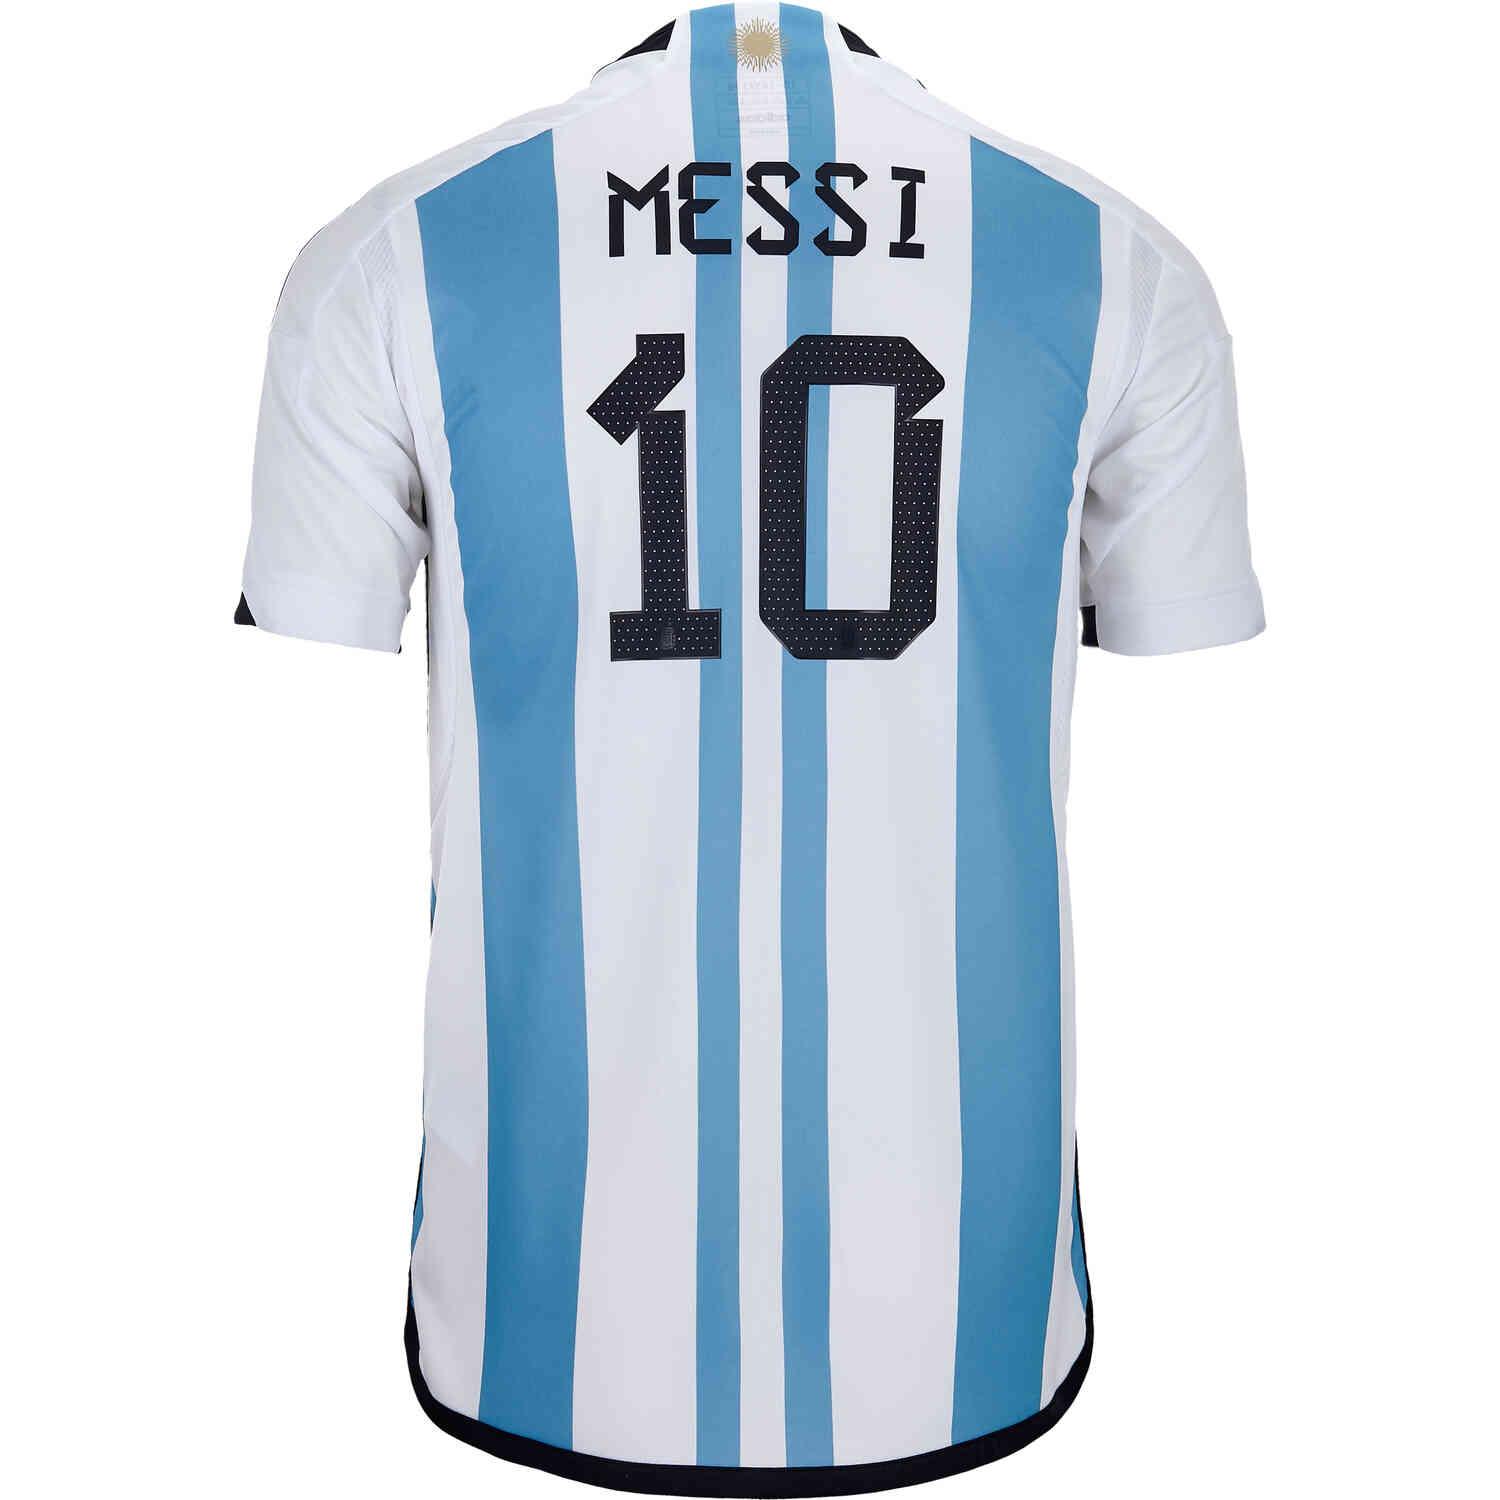 Messi Argentina 10